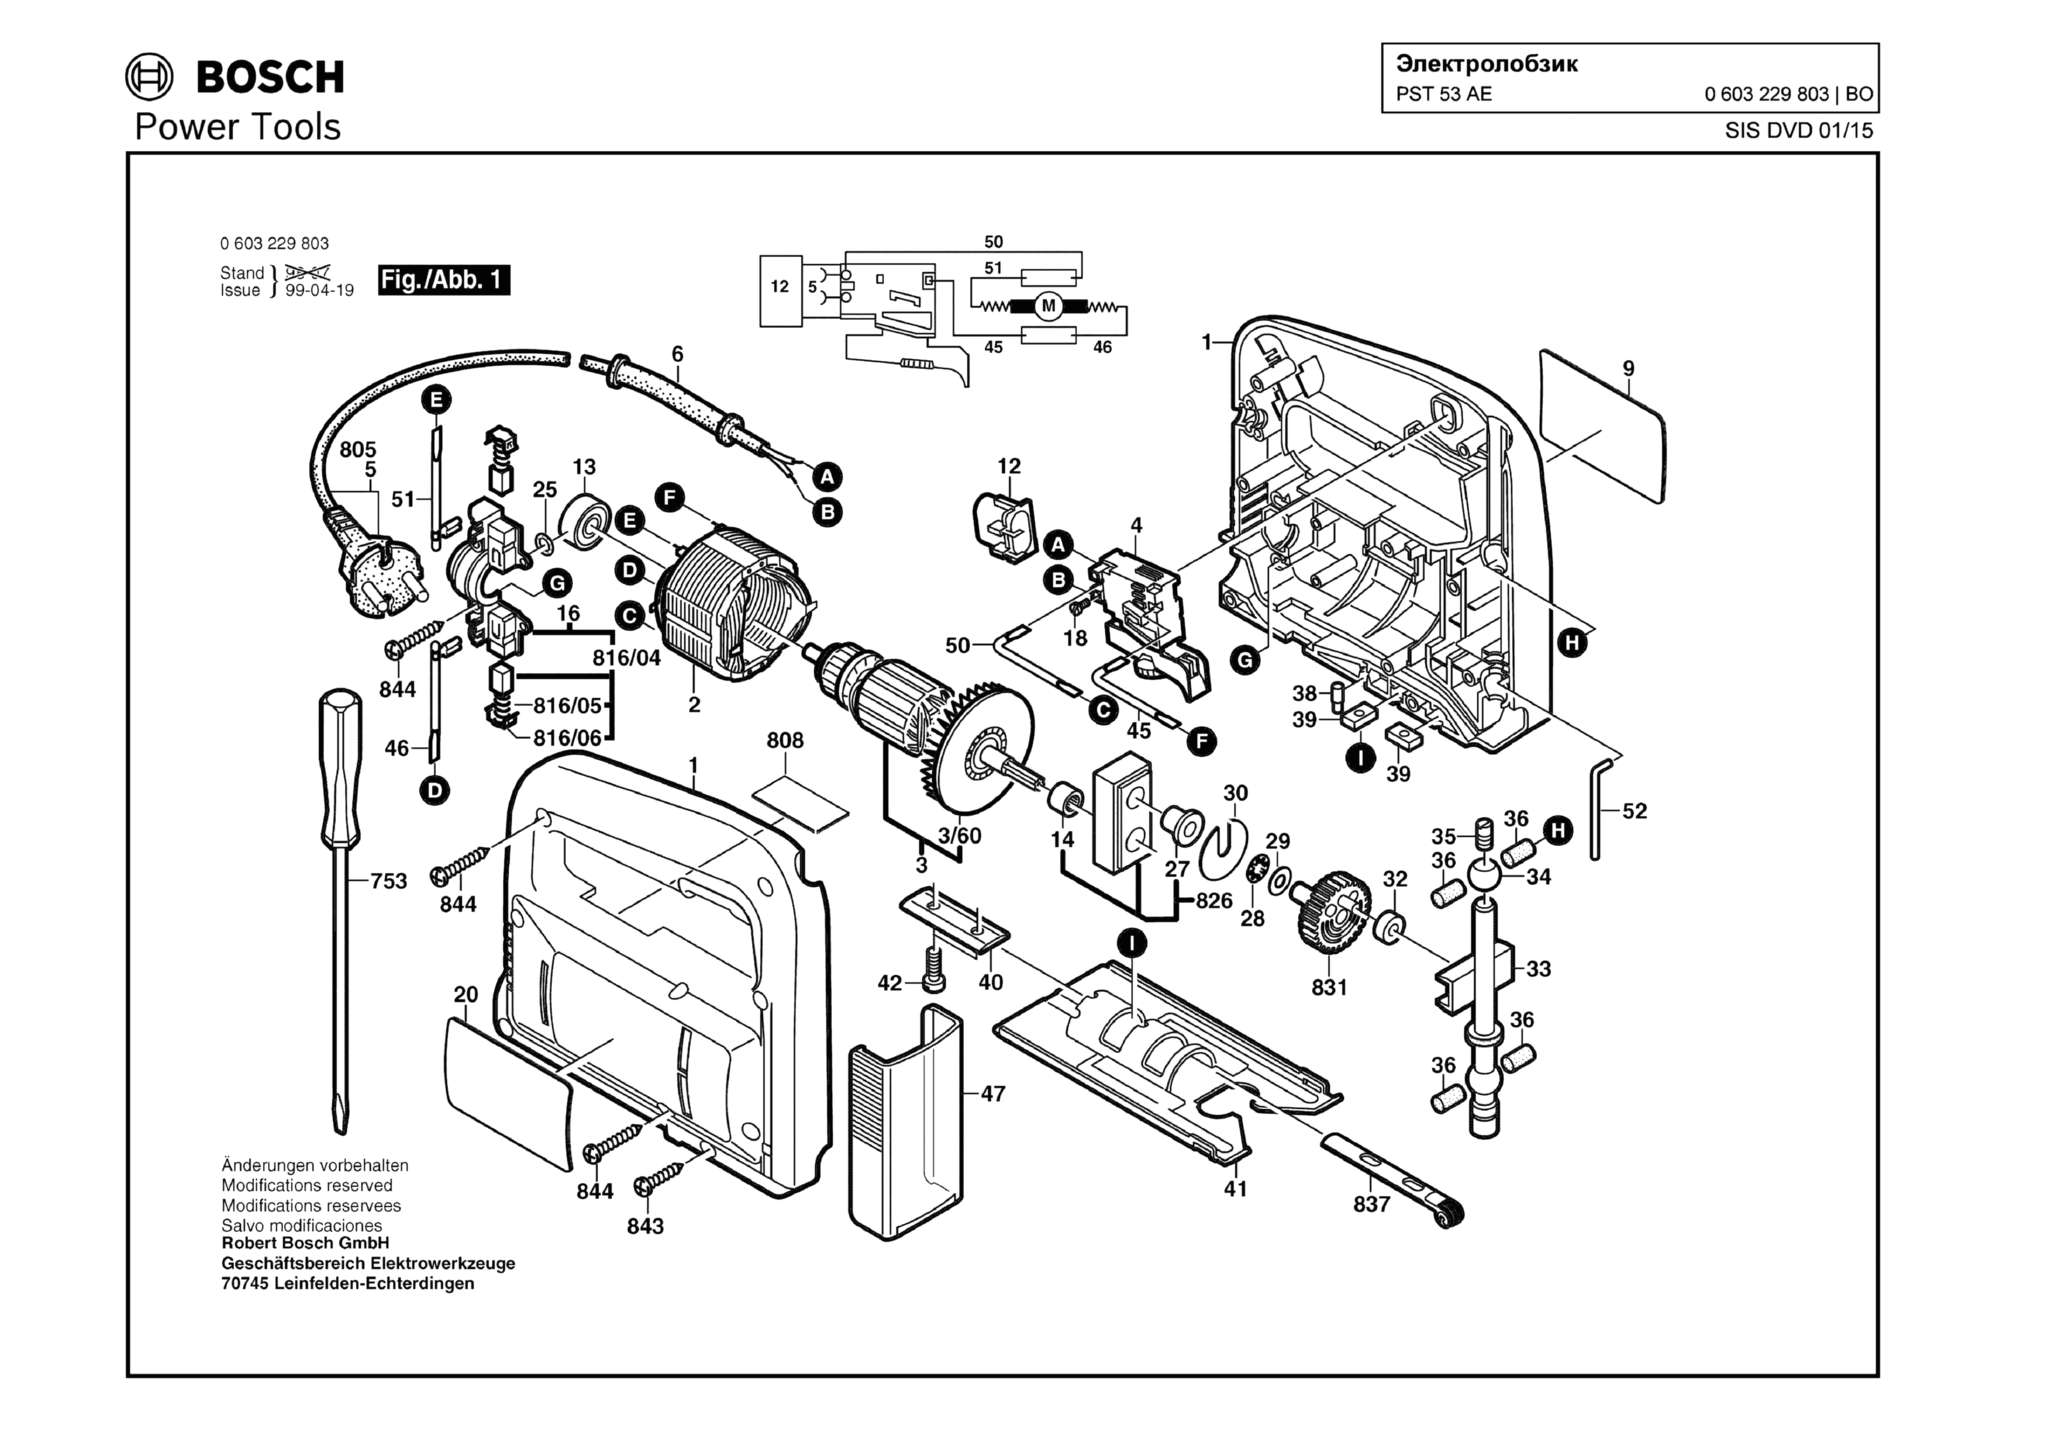 Запчасти, схема и деталировка Bosch PST 53 AE (ТИП 603229803)